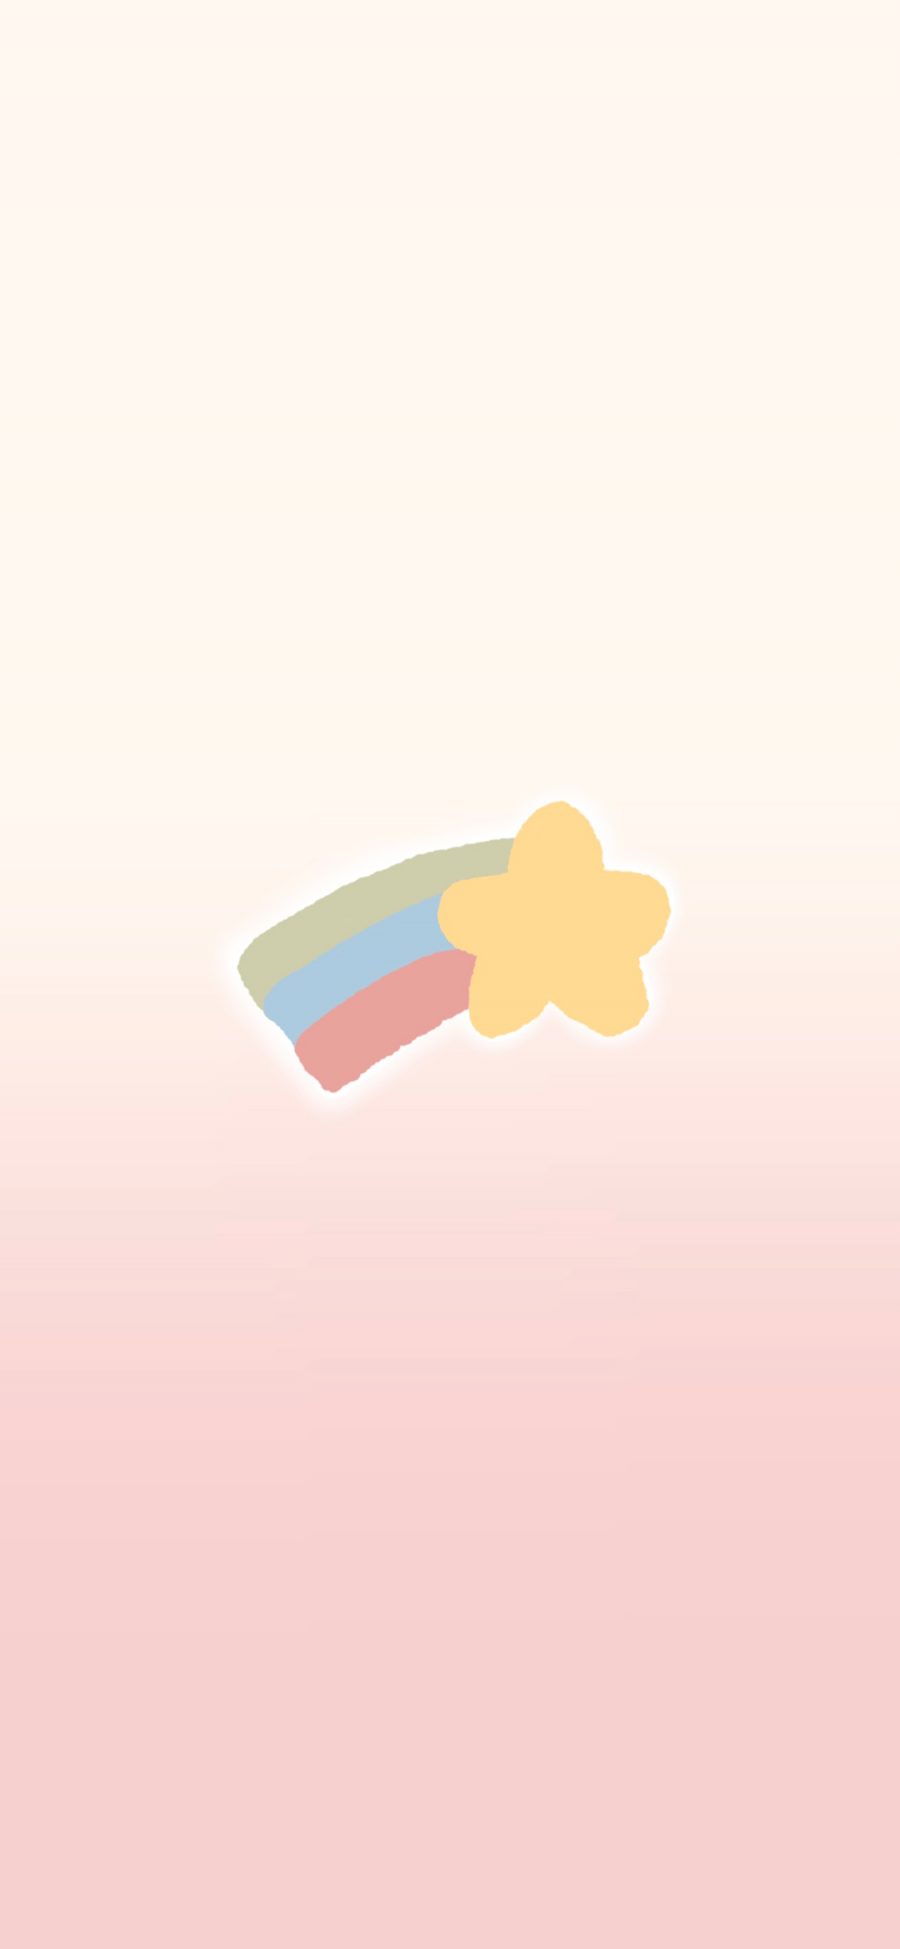 [2436×1125]彩虹 可爱 色彩 五角星 苹果手机动漫壁纸图片